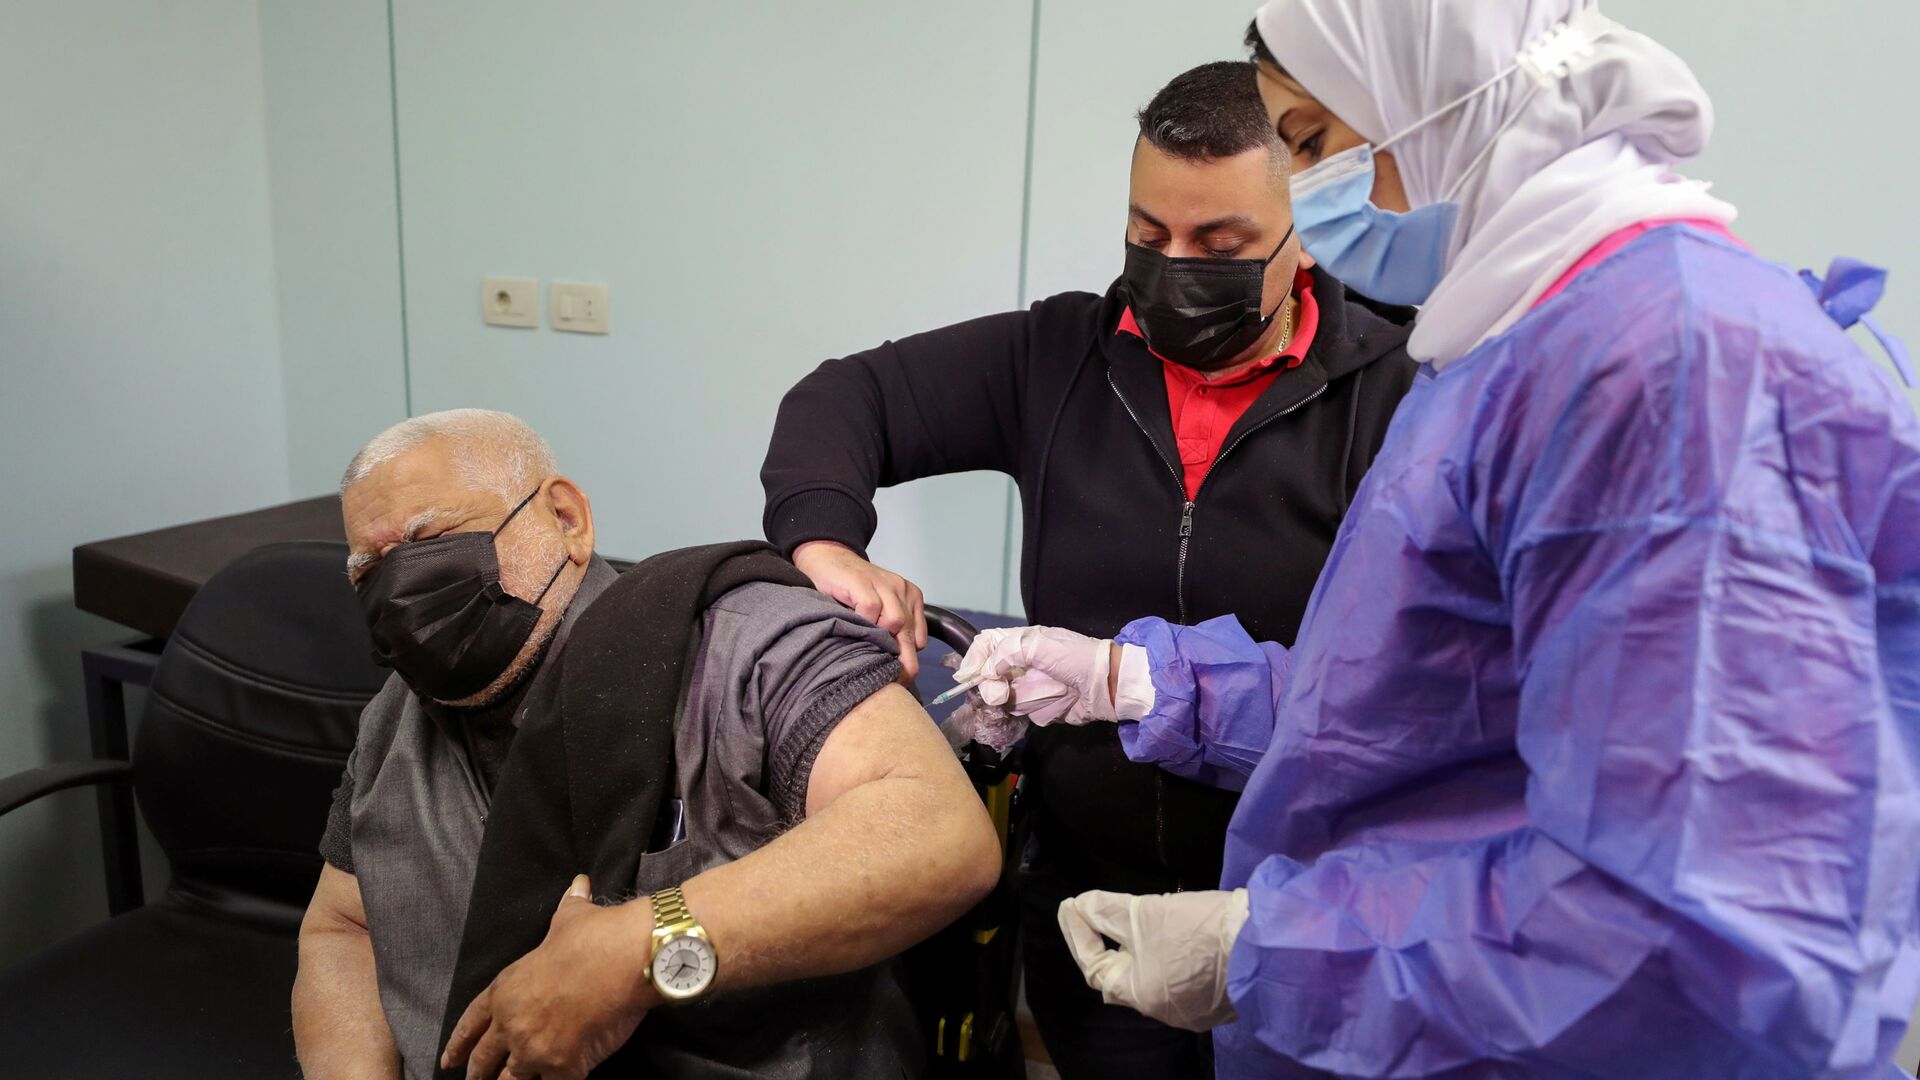  بدء تطعيم واسع النطاق في مصر ضد فيروس كورونا (كوفيد-19)، القاهرة، 4 مارس 2021 - سبوتنيك عربي, 1920, 31.10.2021